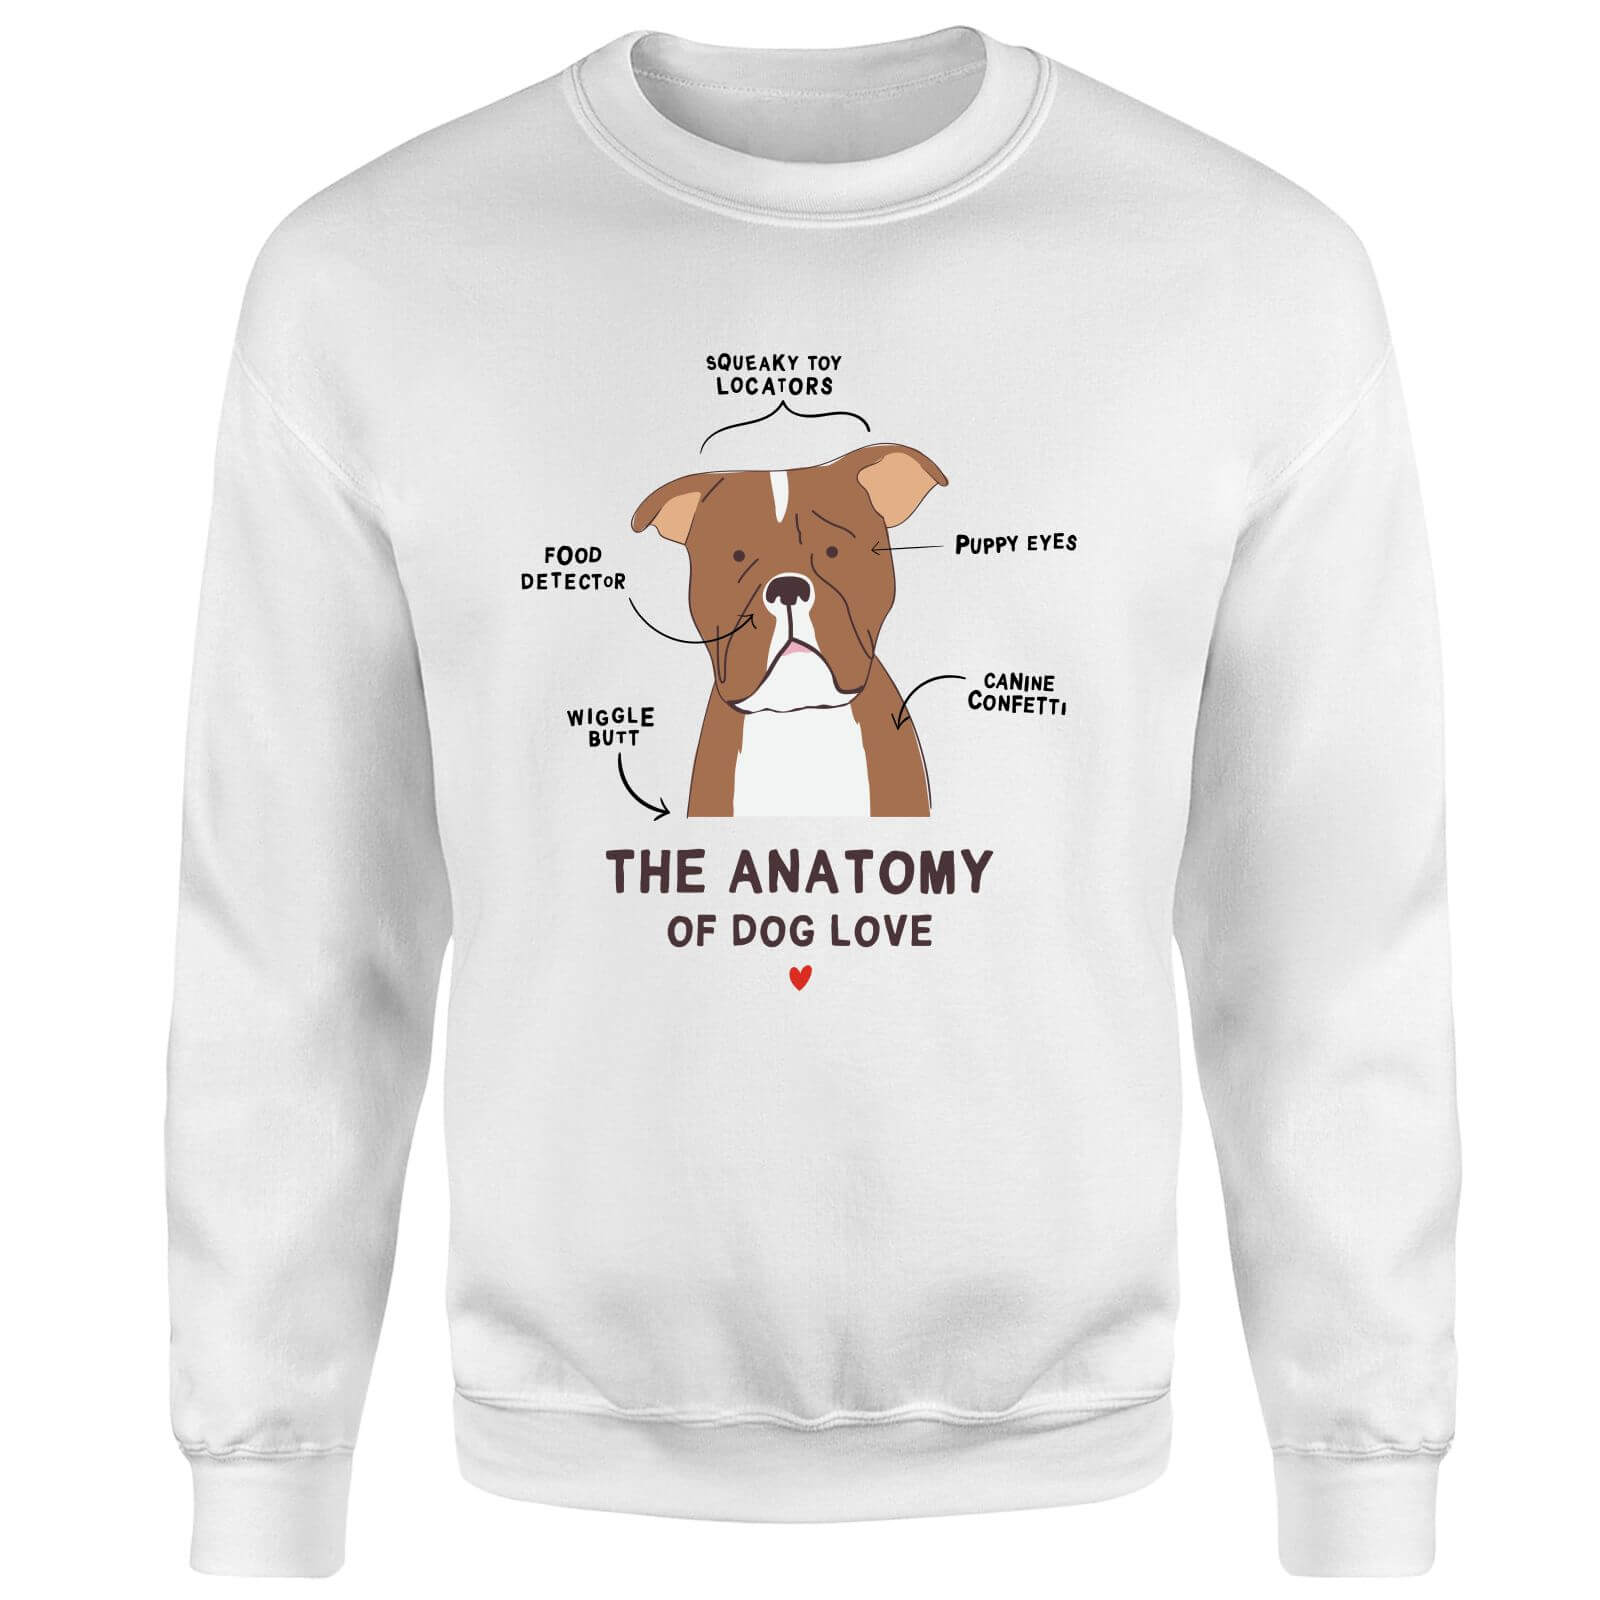 The Anatomy Of Dog Love Sweatshirt - White - M - White